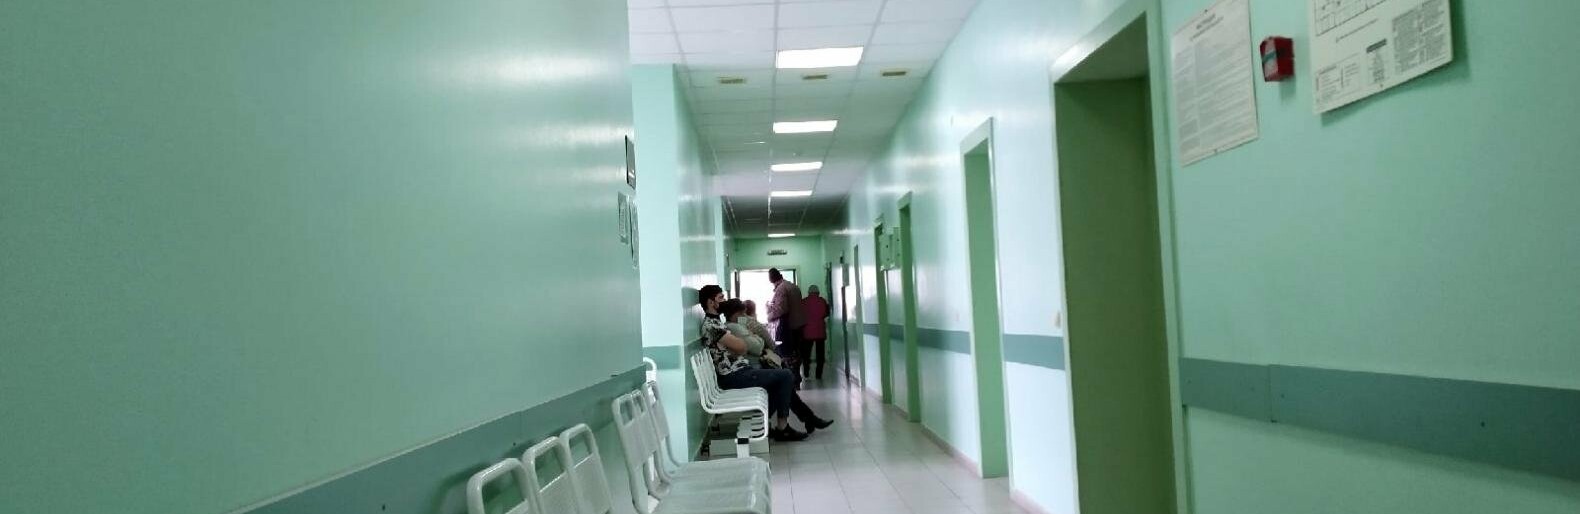 Пациентку областной больницы в Белгороде заставили покупать физраствор после перебоев в поставках из-за геополитики